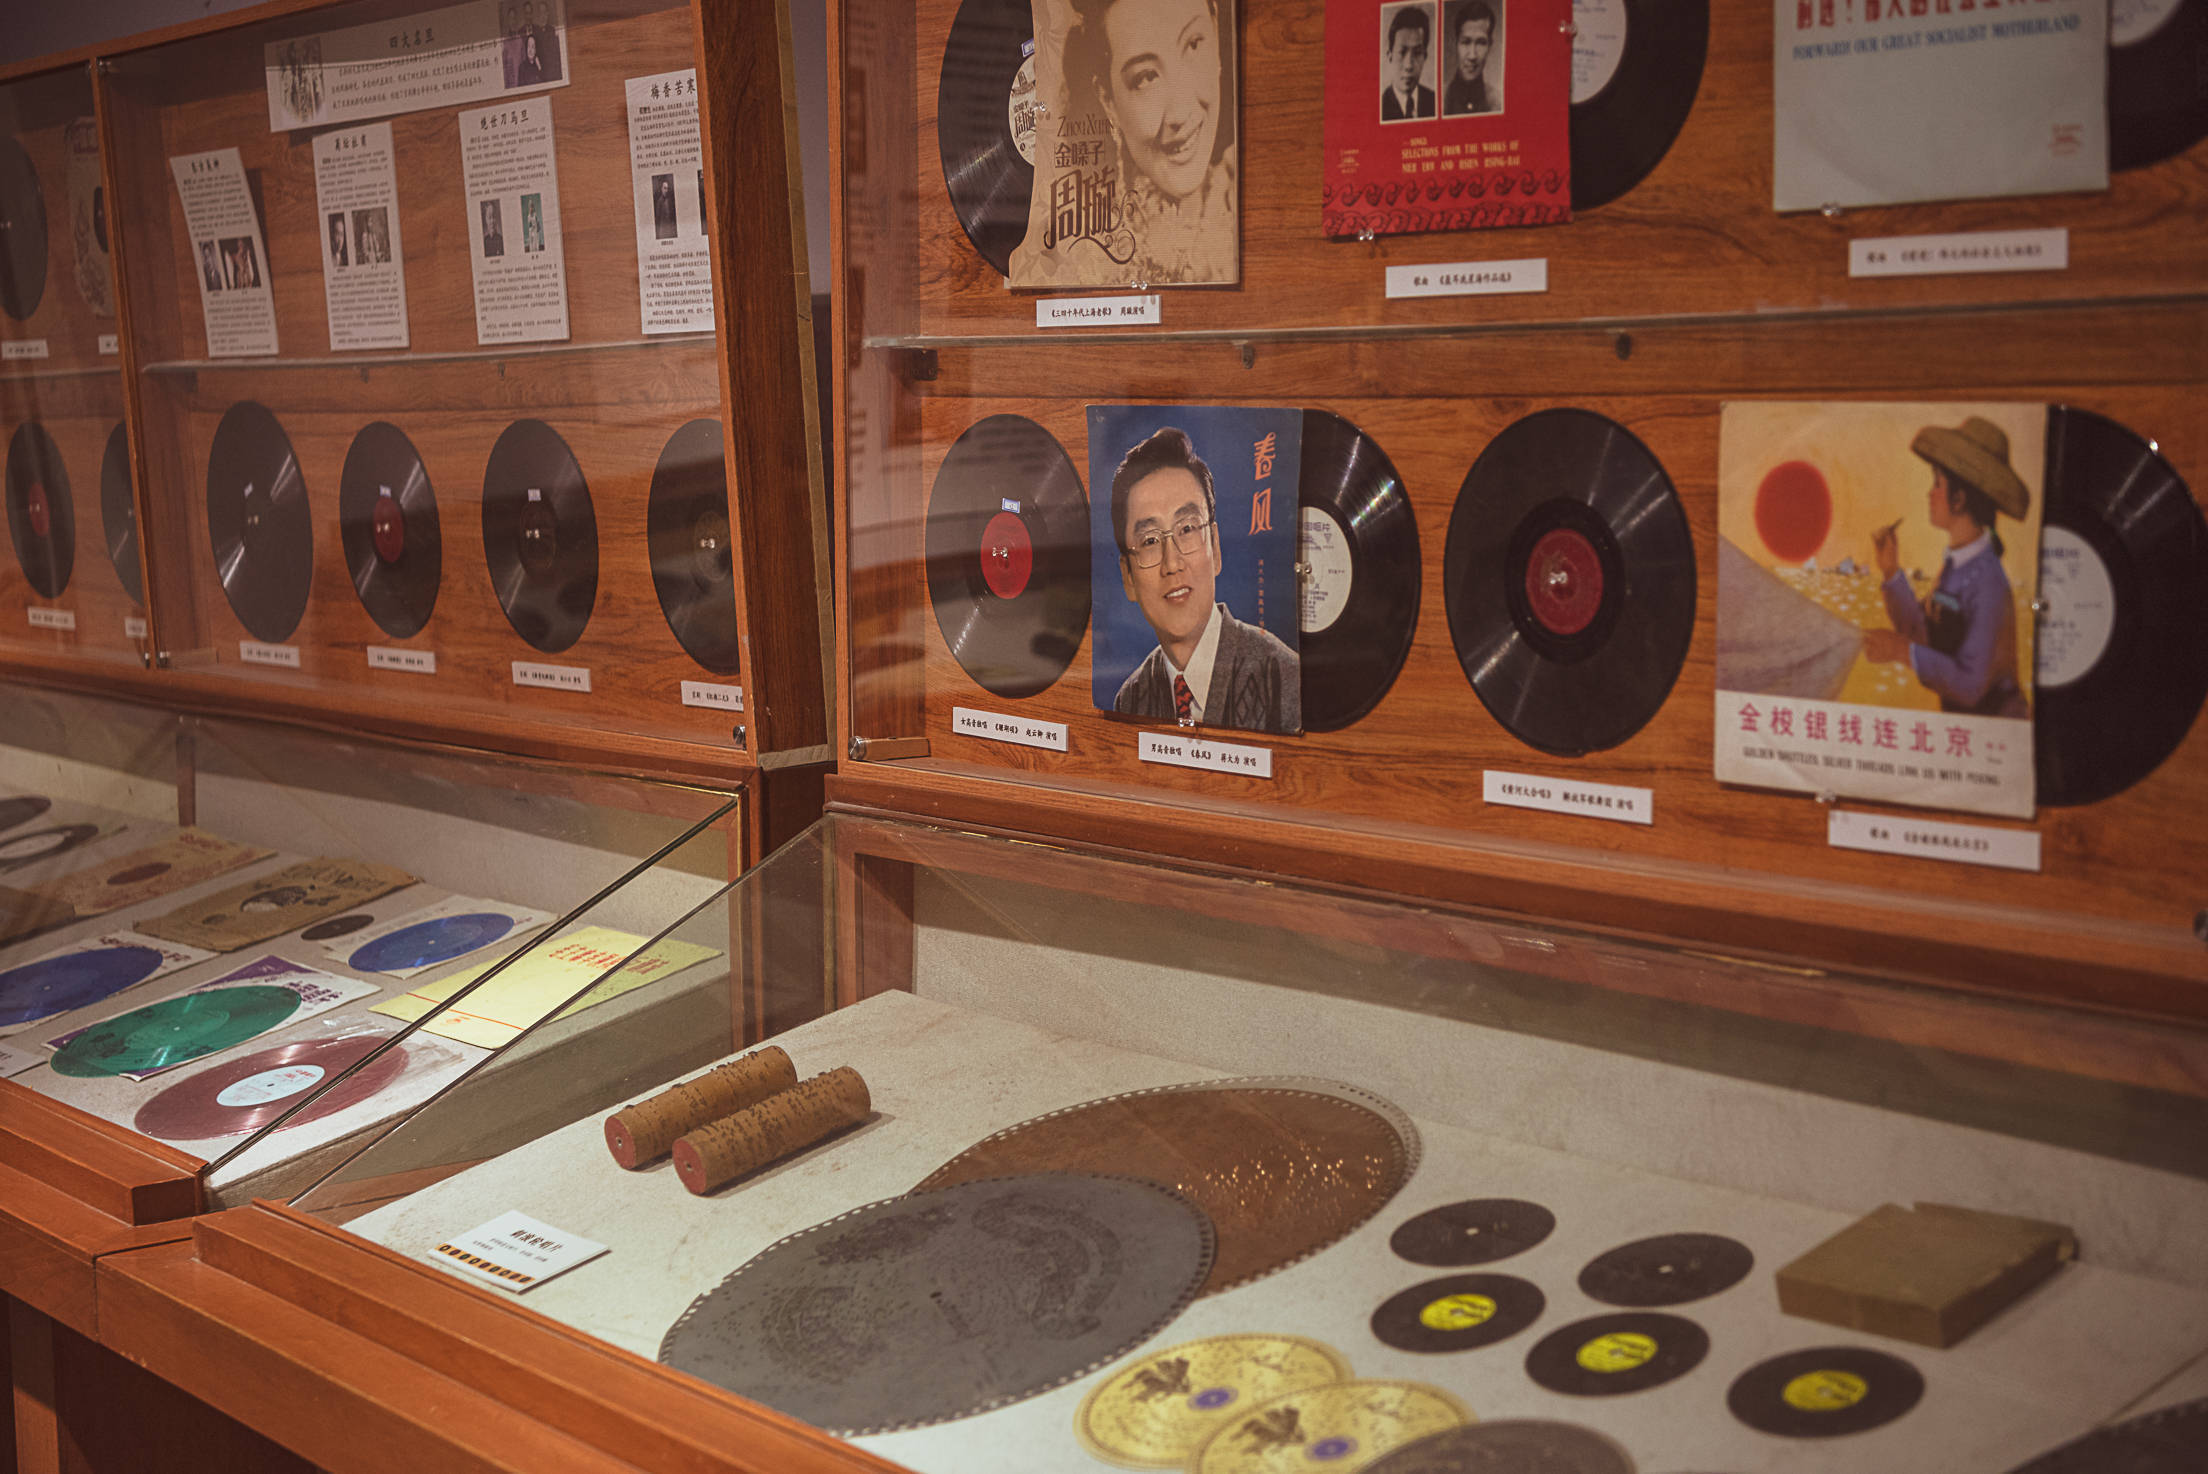 走进留声机博物馆,感受鲜活生动的历史,聆听穿越百年的美妙声音